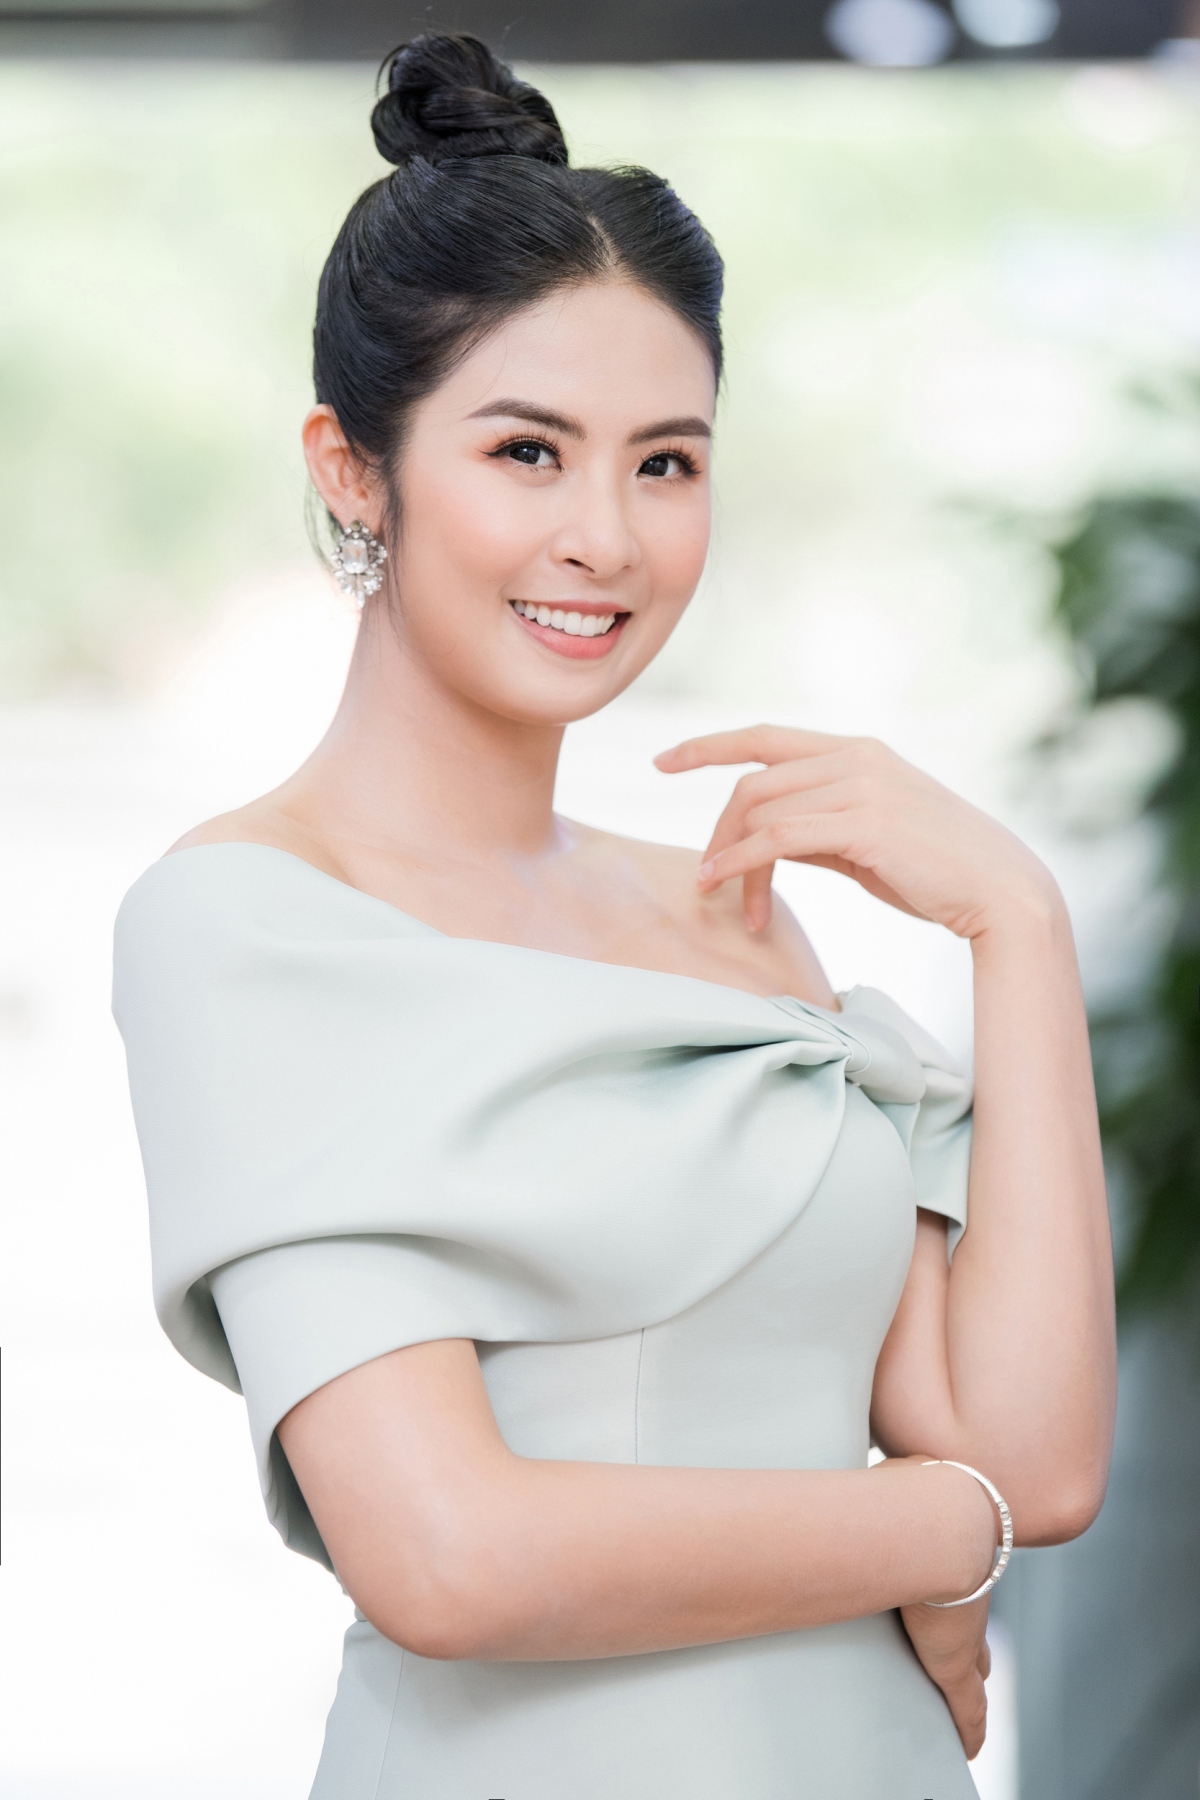 Hoa hậu Ngọc Hân: "Tôi hoãn cưới đến khi cảm thấy thật sự an toàn"